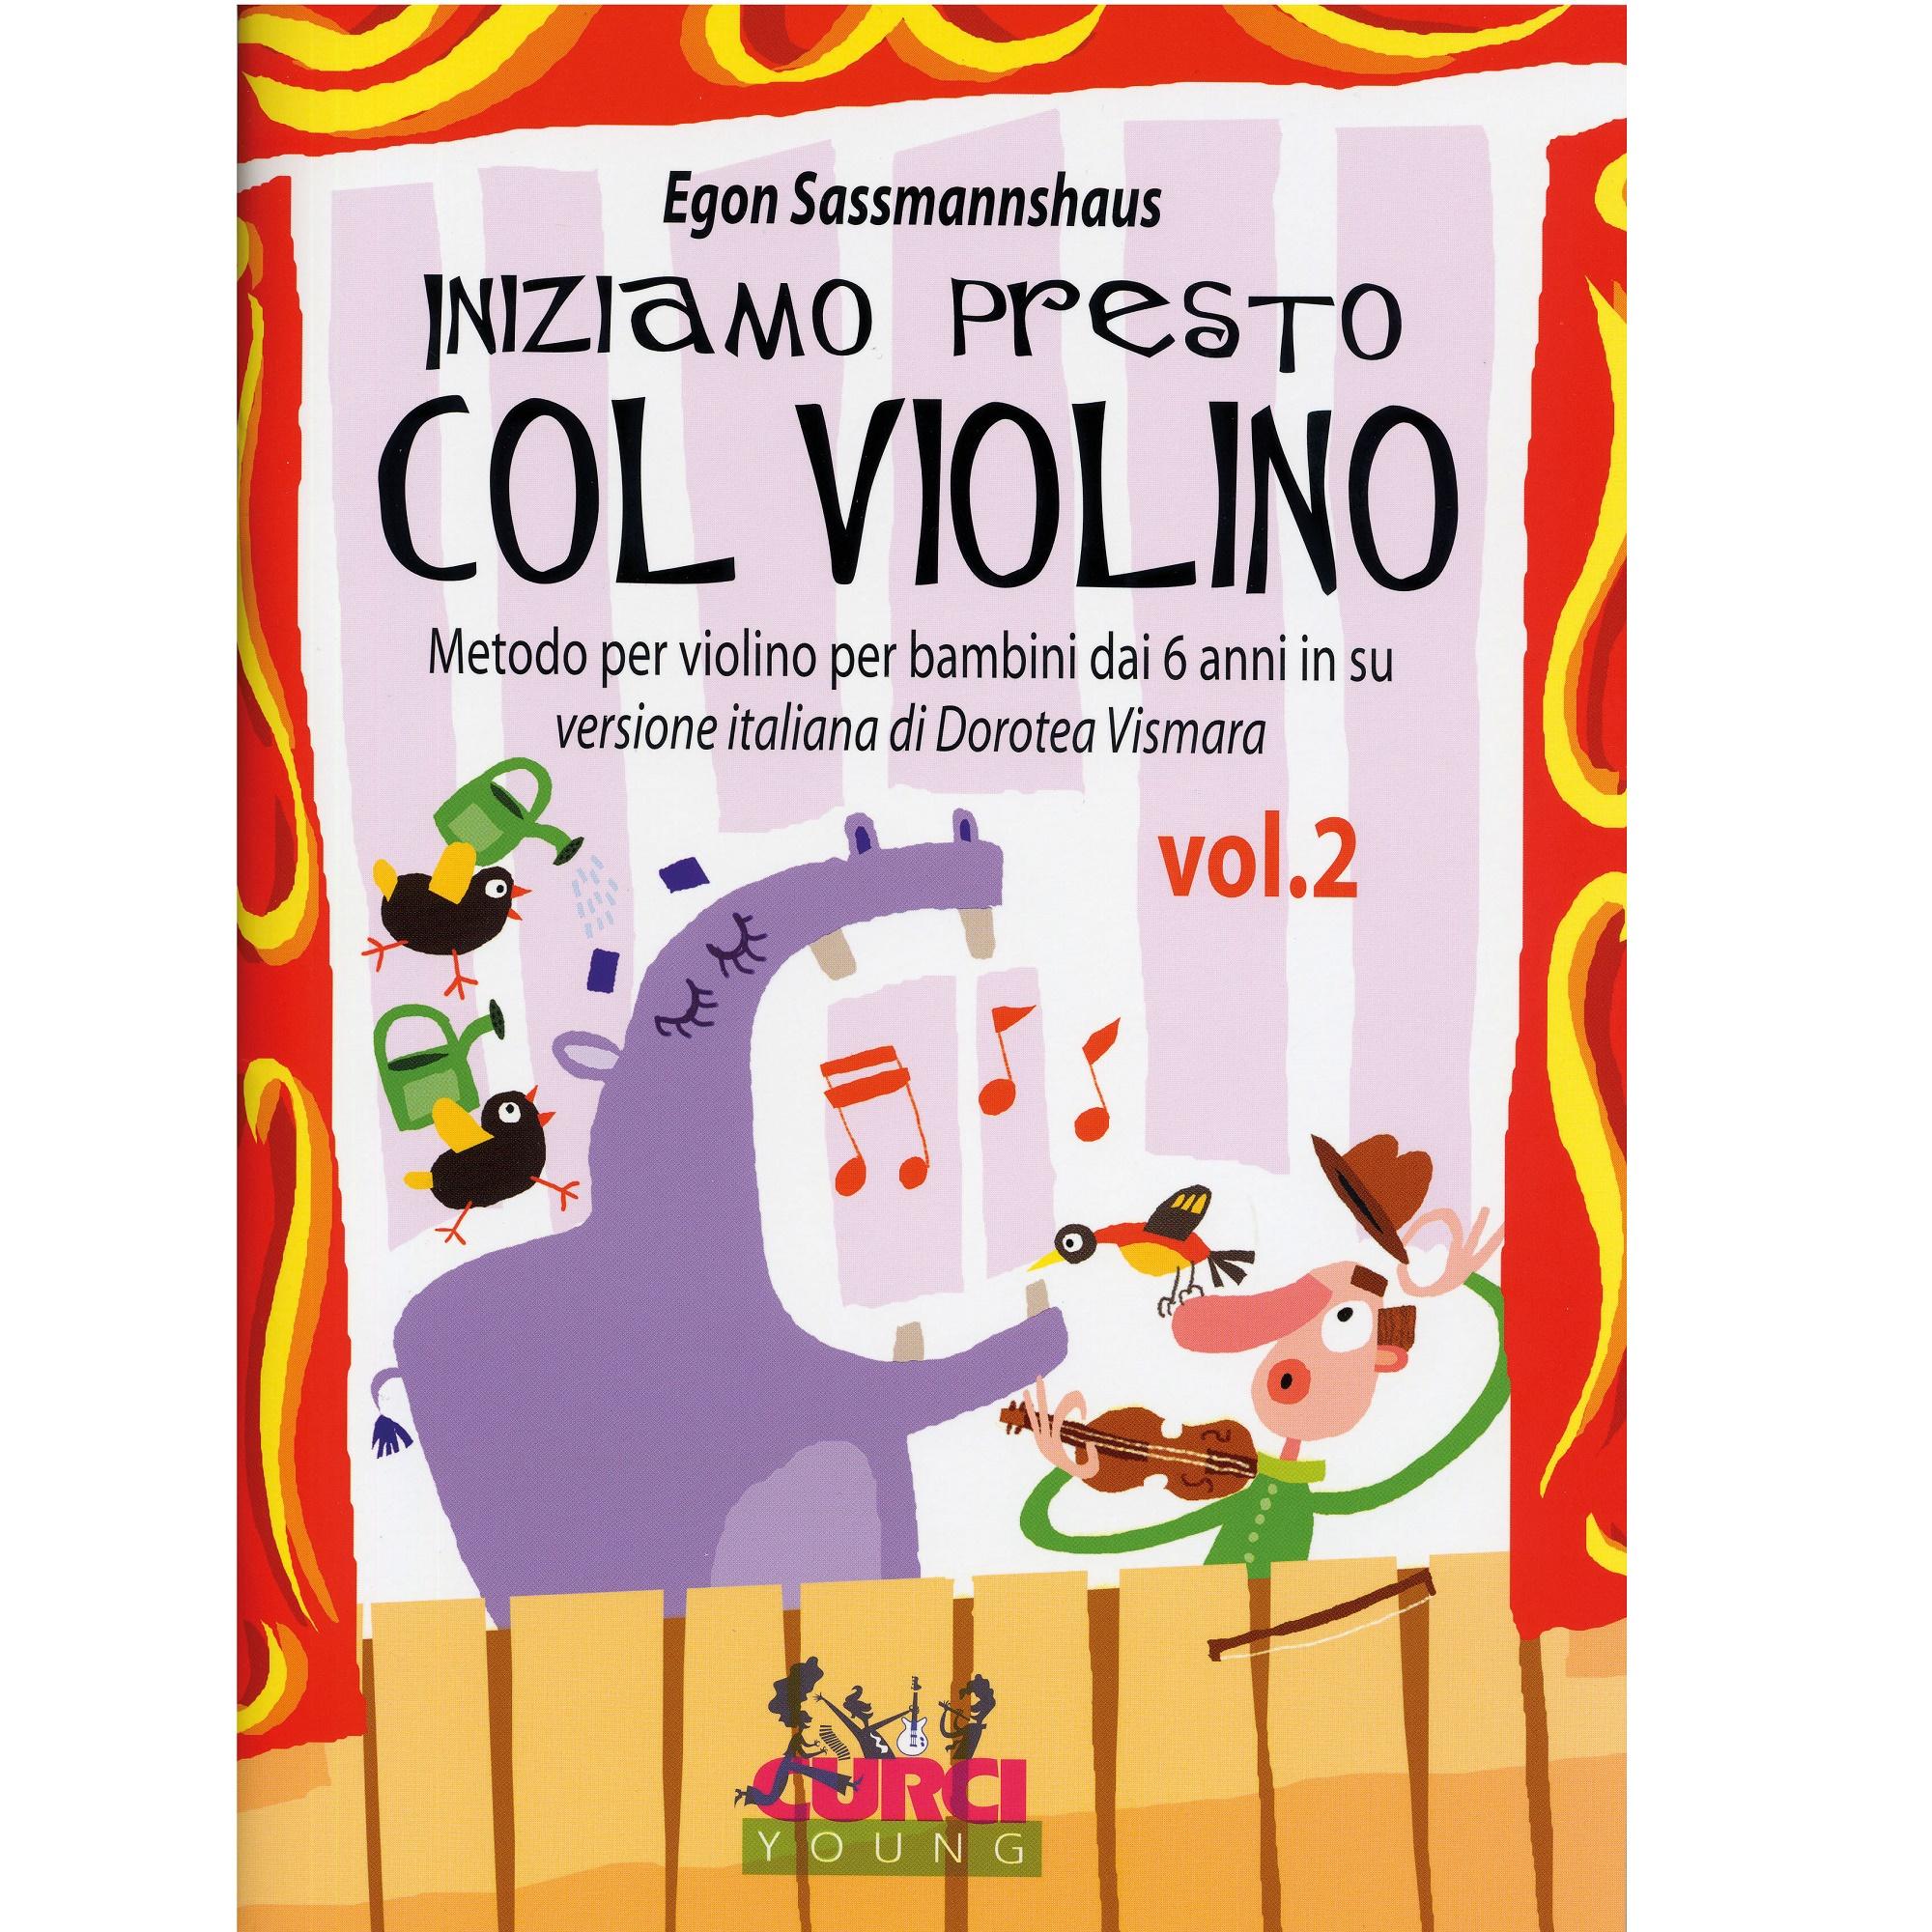 Egon Sassmannshaus Iniziamo presto Col Violino Metodo per violino per bambini dai 6 anni in su versione italiana di Dorotea Vismata Vol. 2 - Curci Young